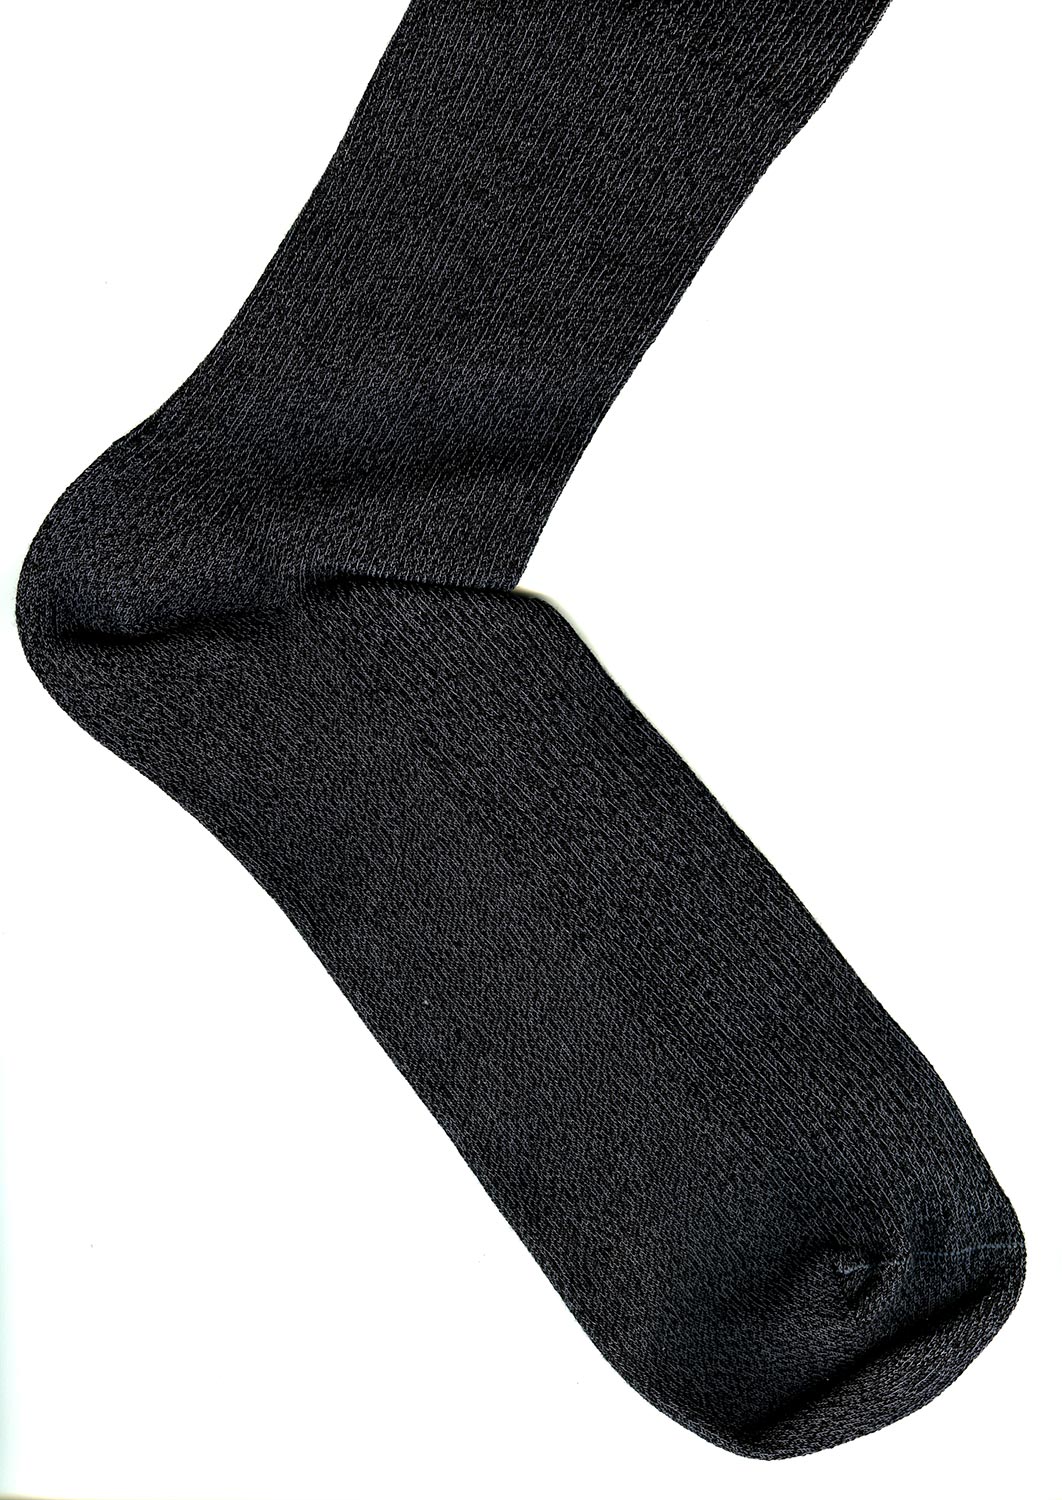 Дежурные мужские носки в рубчик Omsa 301 Comfort цвета Grigio Melange (серый меланж) ©bracatuS